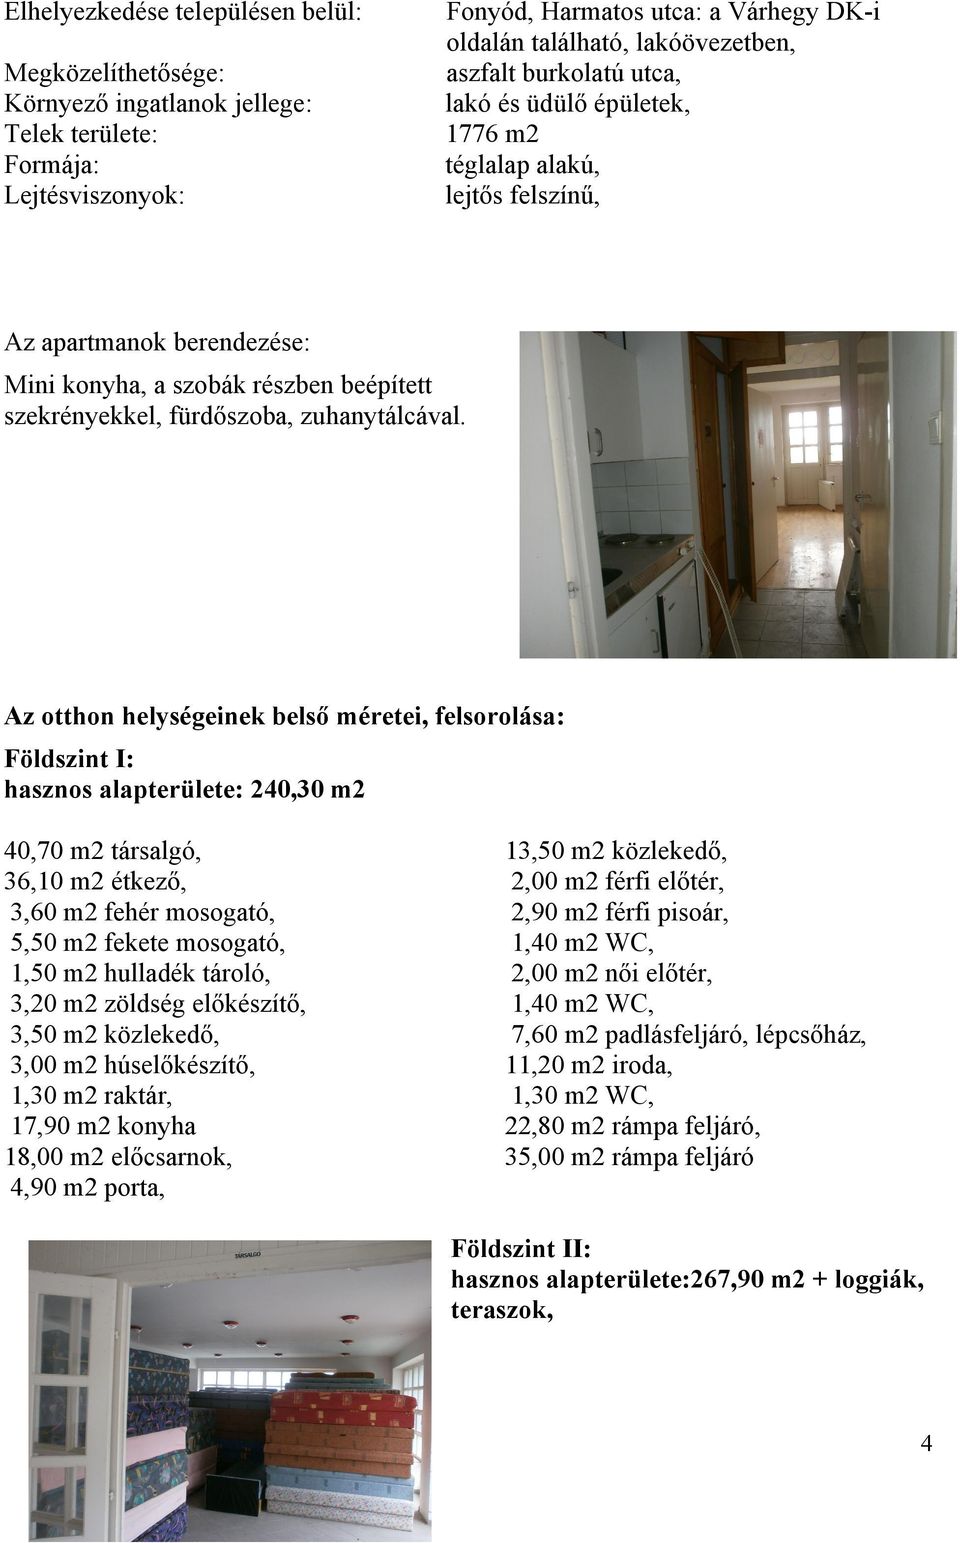 Az otthon helységeinek belső méretei, felsorolása: Földszint I: hasznos alapterülete: 240,30 m2 40,70 m2 társalgó, 36,10 m2 étkező, 3,60 m2 fehér mosogató, 5,50 m2 fekete mosogató, 1,50 m2 hulladék